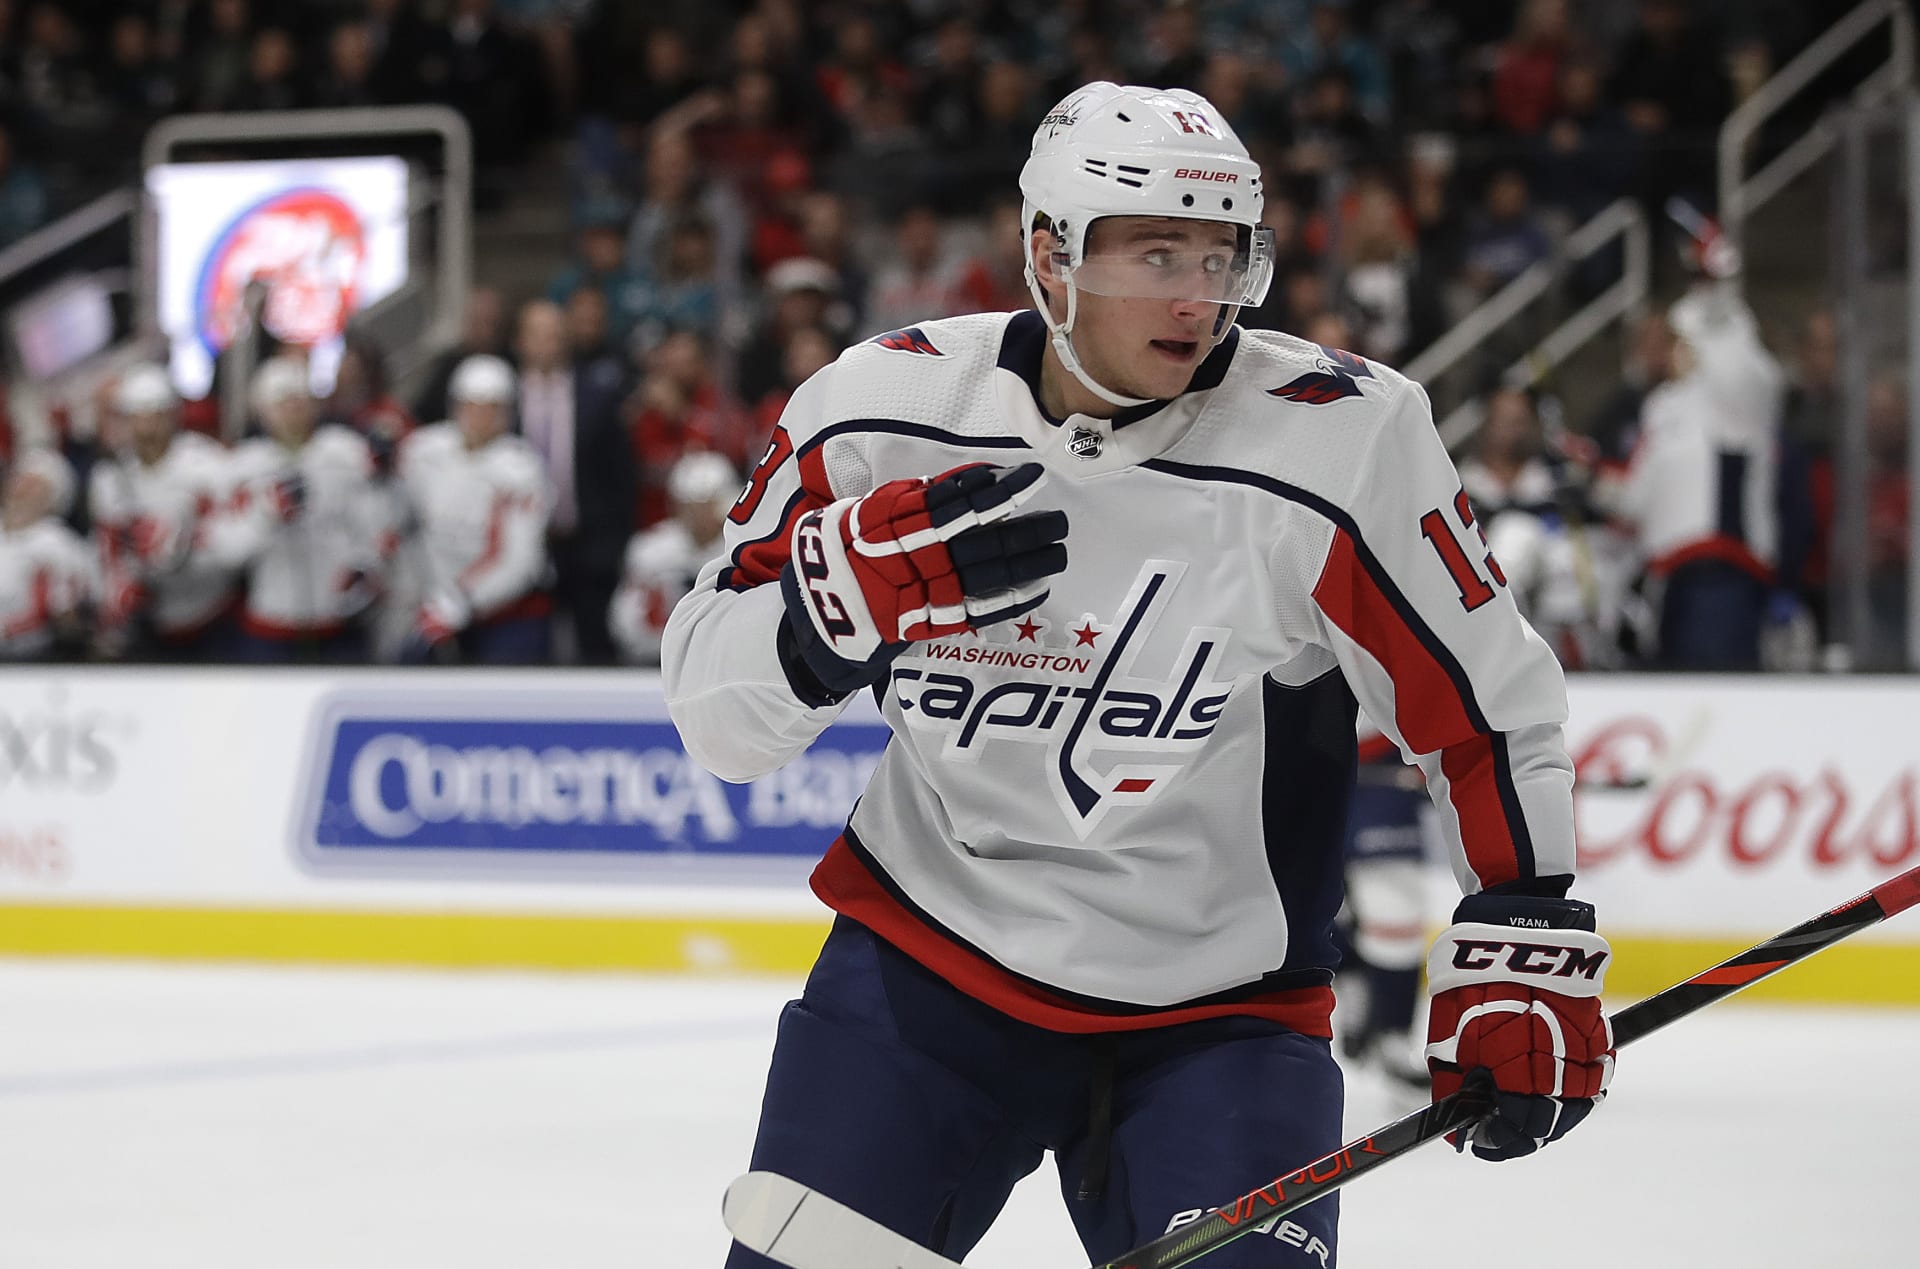 Český hokejový útočník Jakub Vrána se stal součástí pravděpodobně nejzajímavější výměny posledního dne přestupů v NHL.